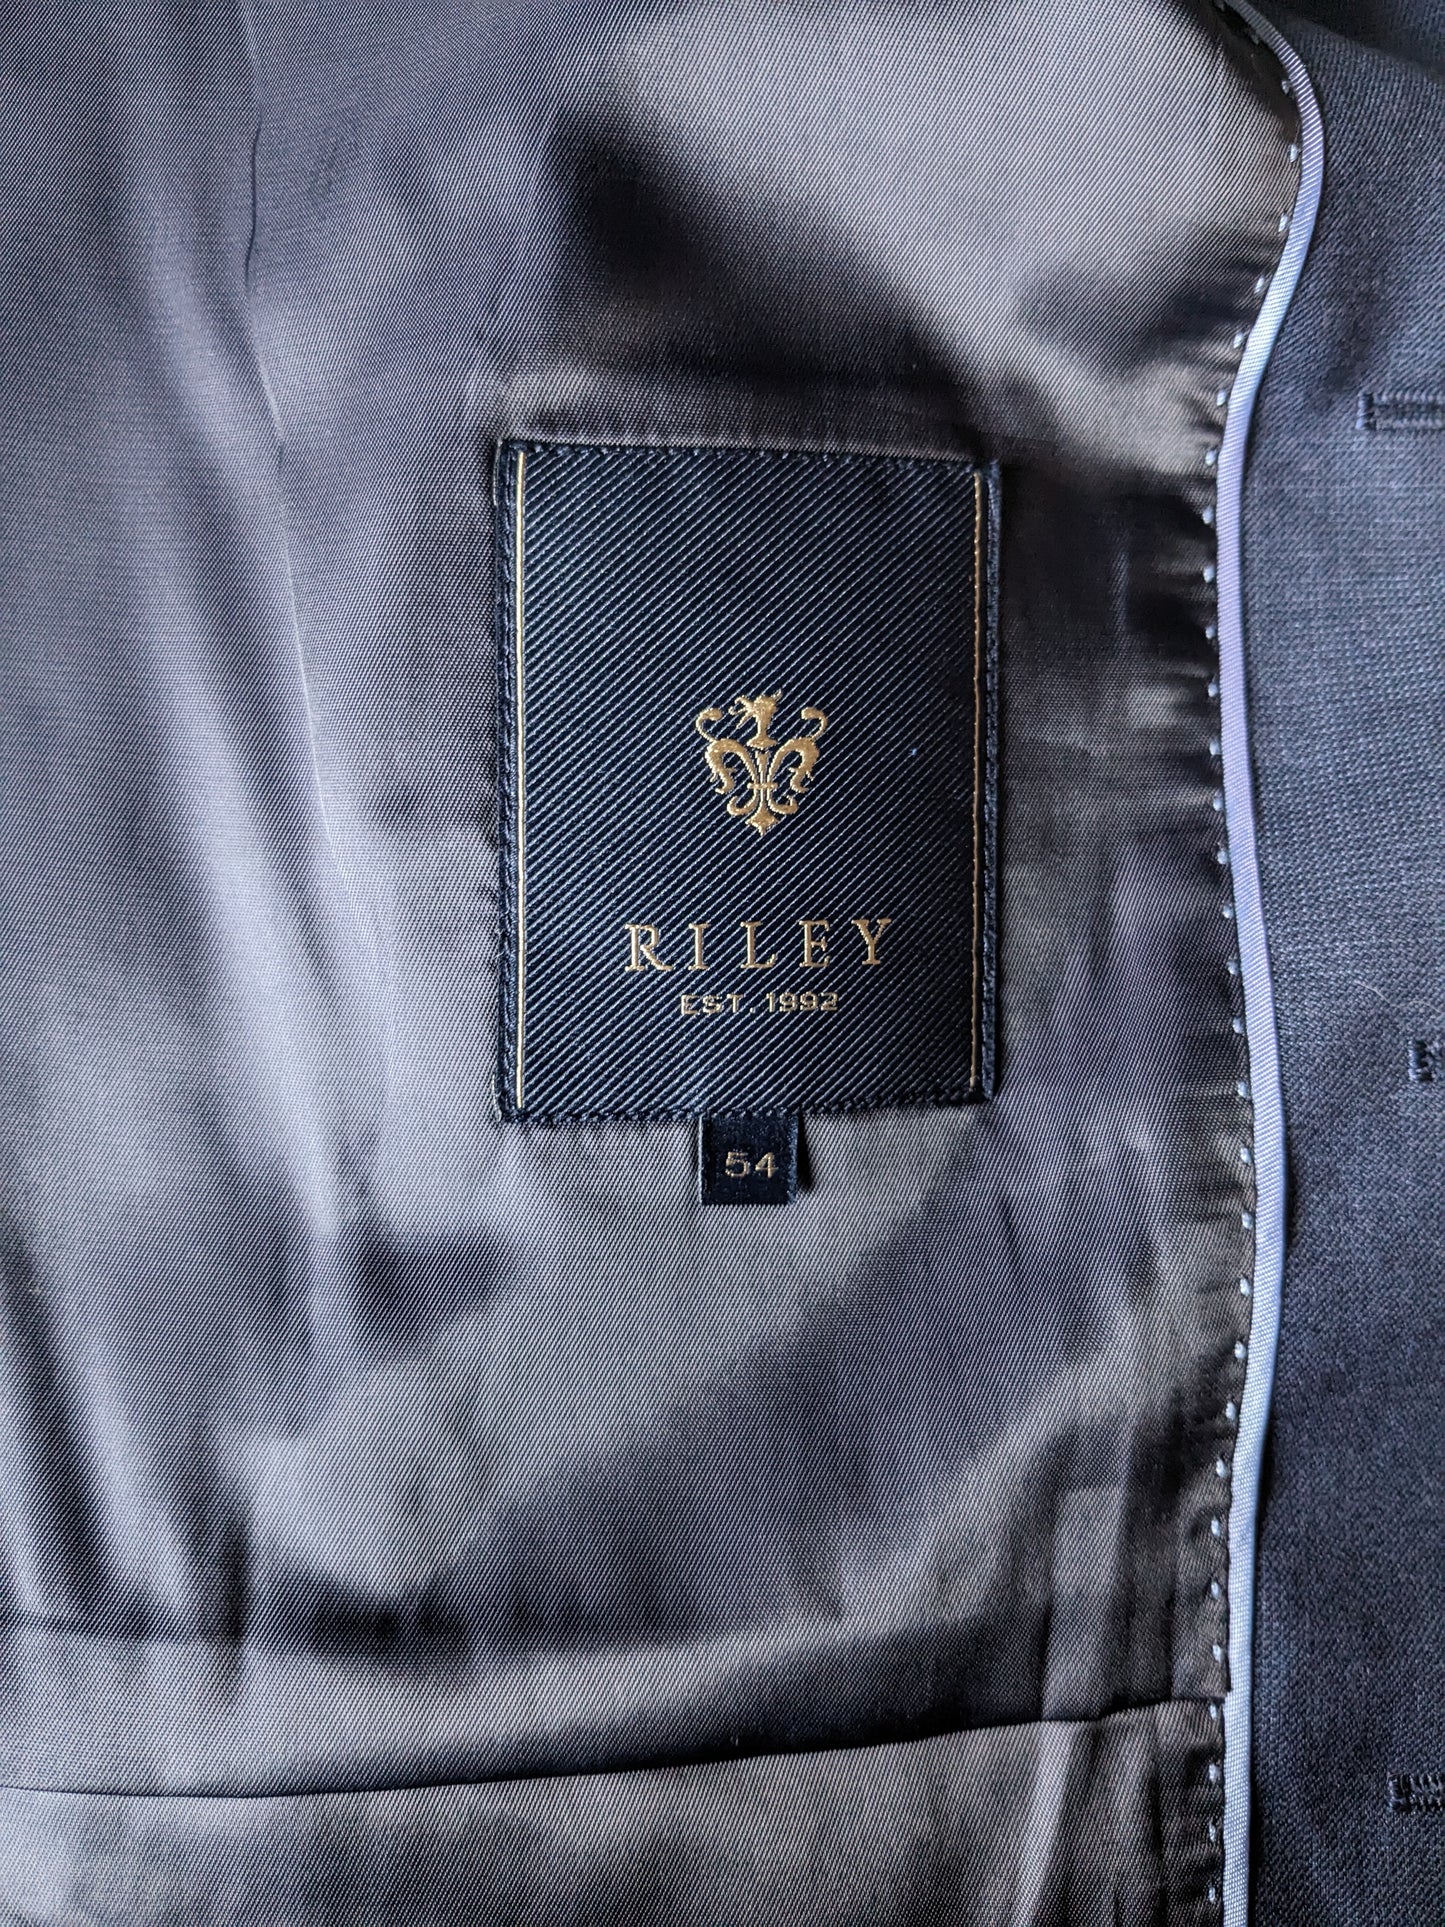 Riley woolen waistcoat. Dark blue motif. Size 54 / L. 70% Wool. #332